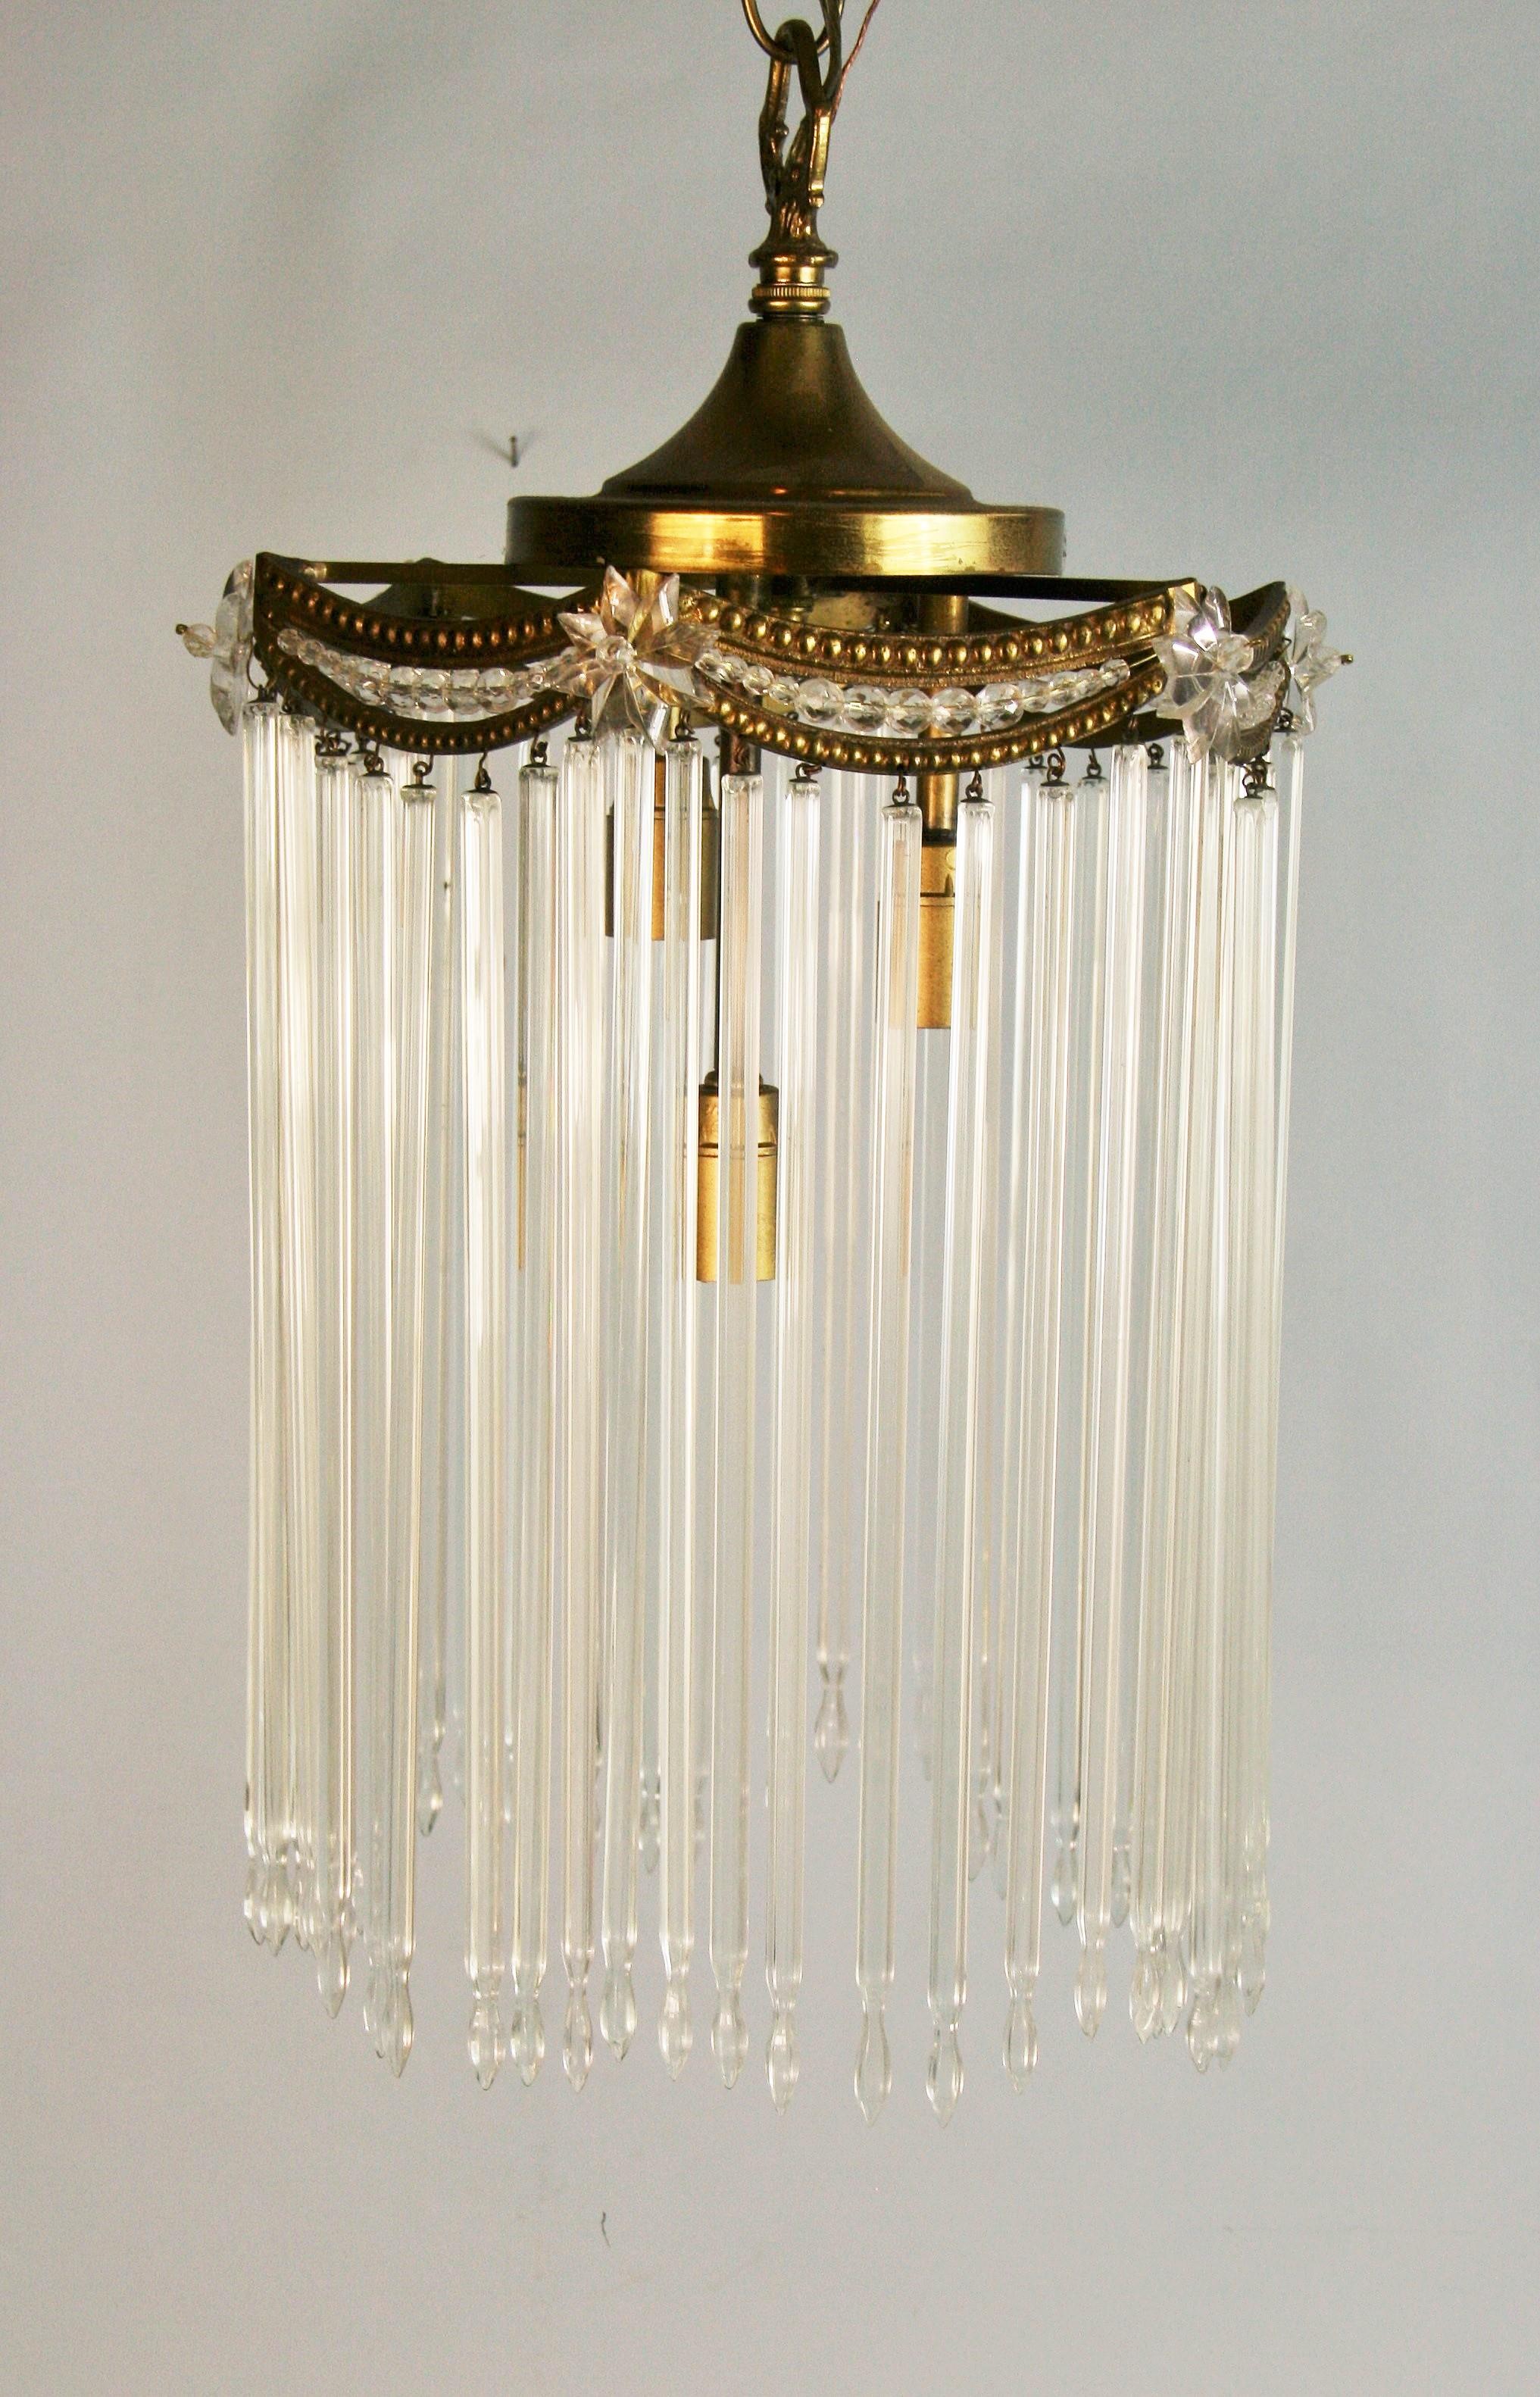 1612 Antiquitäten  dreifach beleuchtete Pendelleuchte in österreichischem Kristall.
Für 3 40-Watt-Glühbirnen mit Kandelabersockel geeignet
Neu verkabelt.